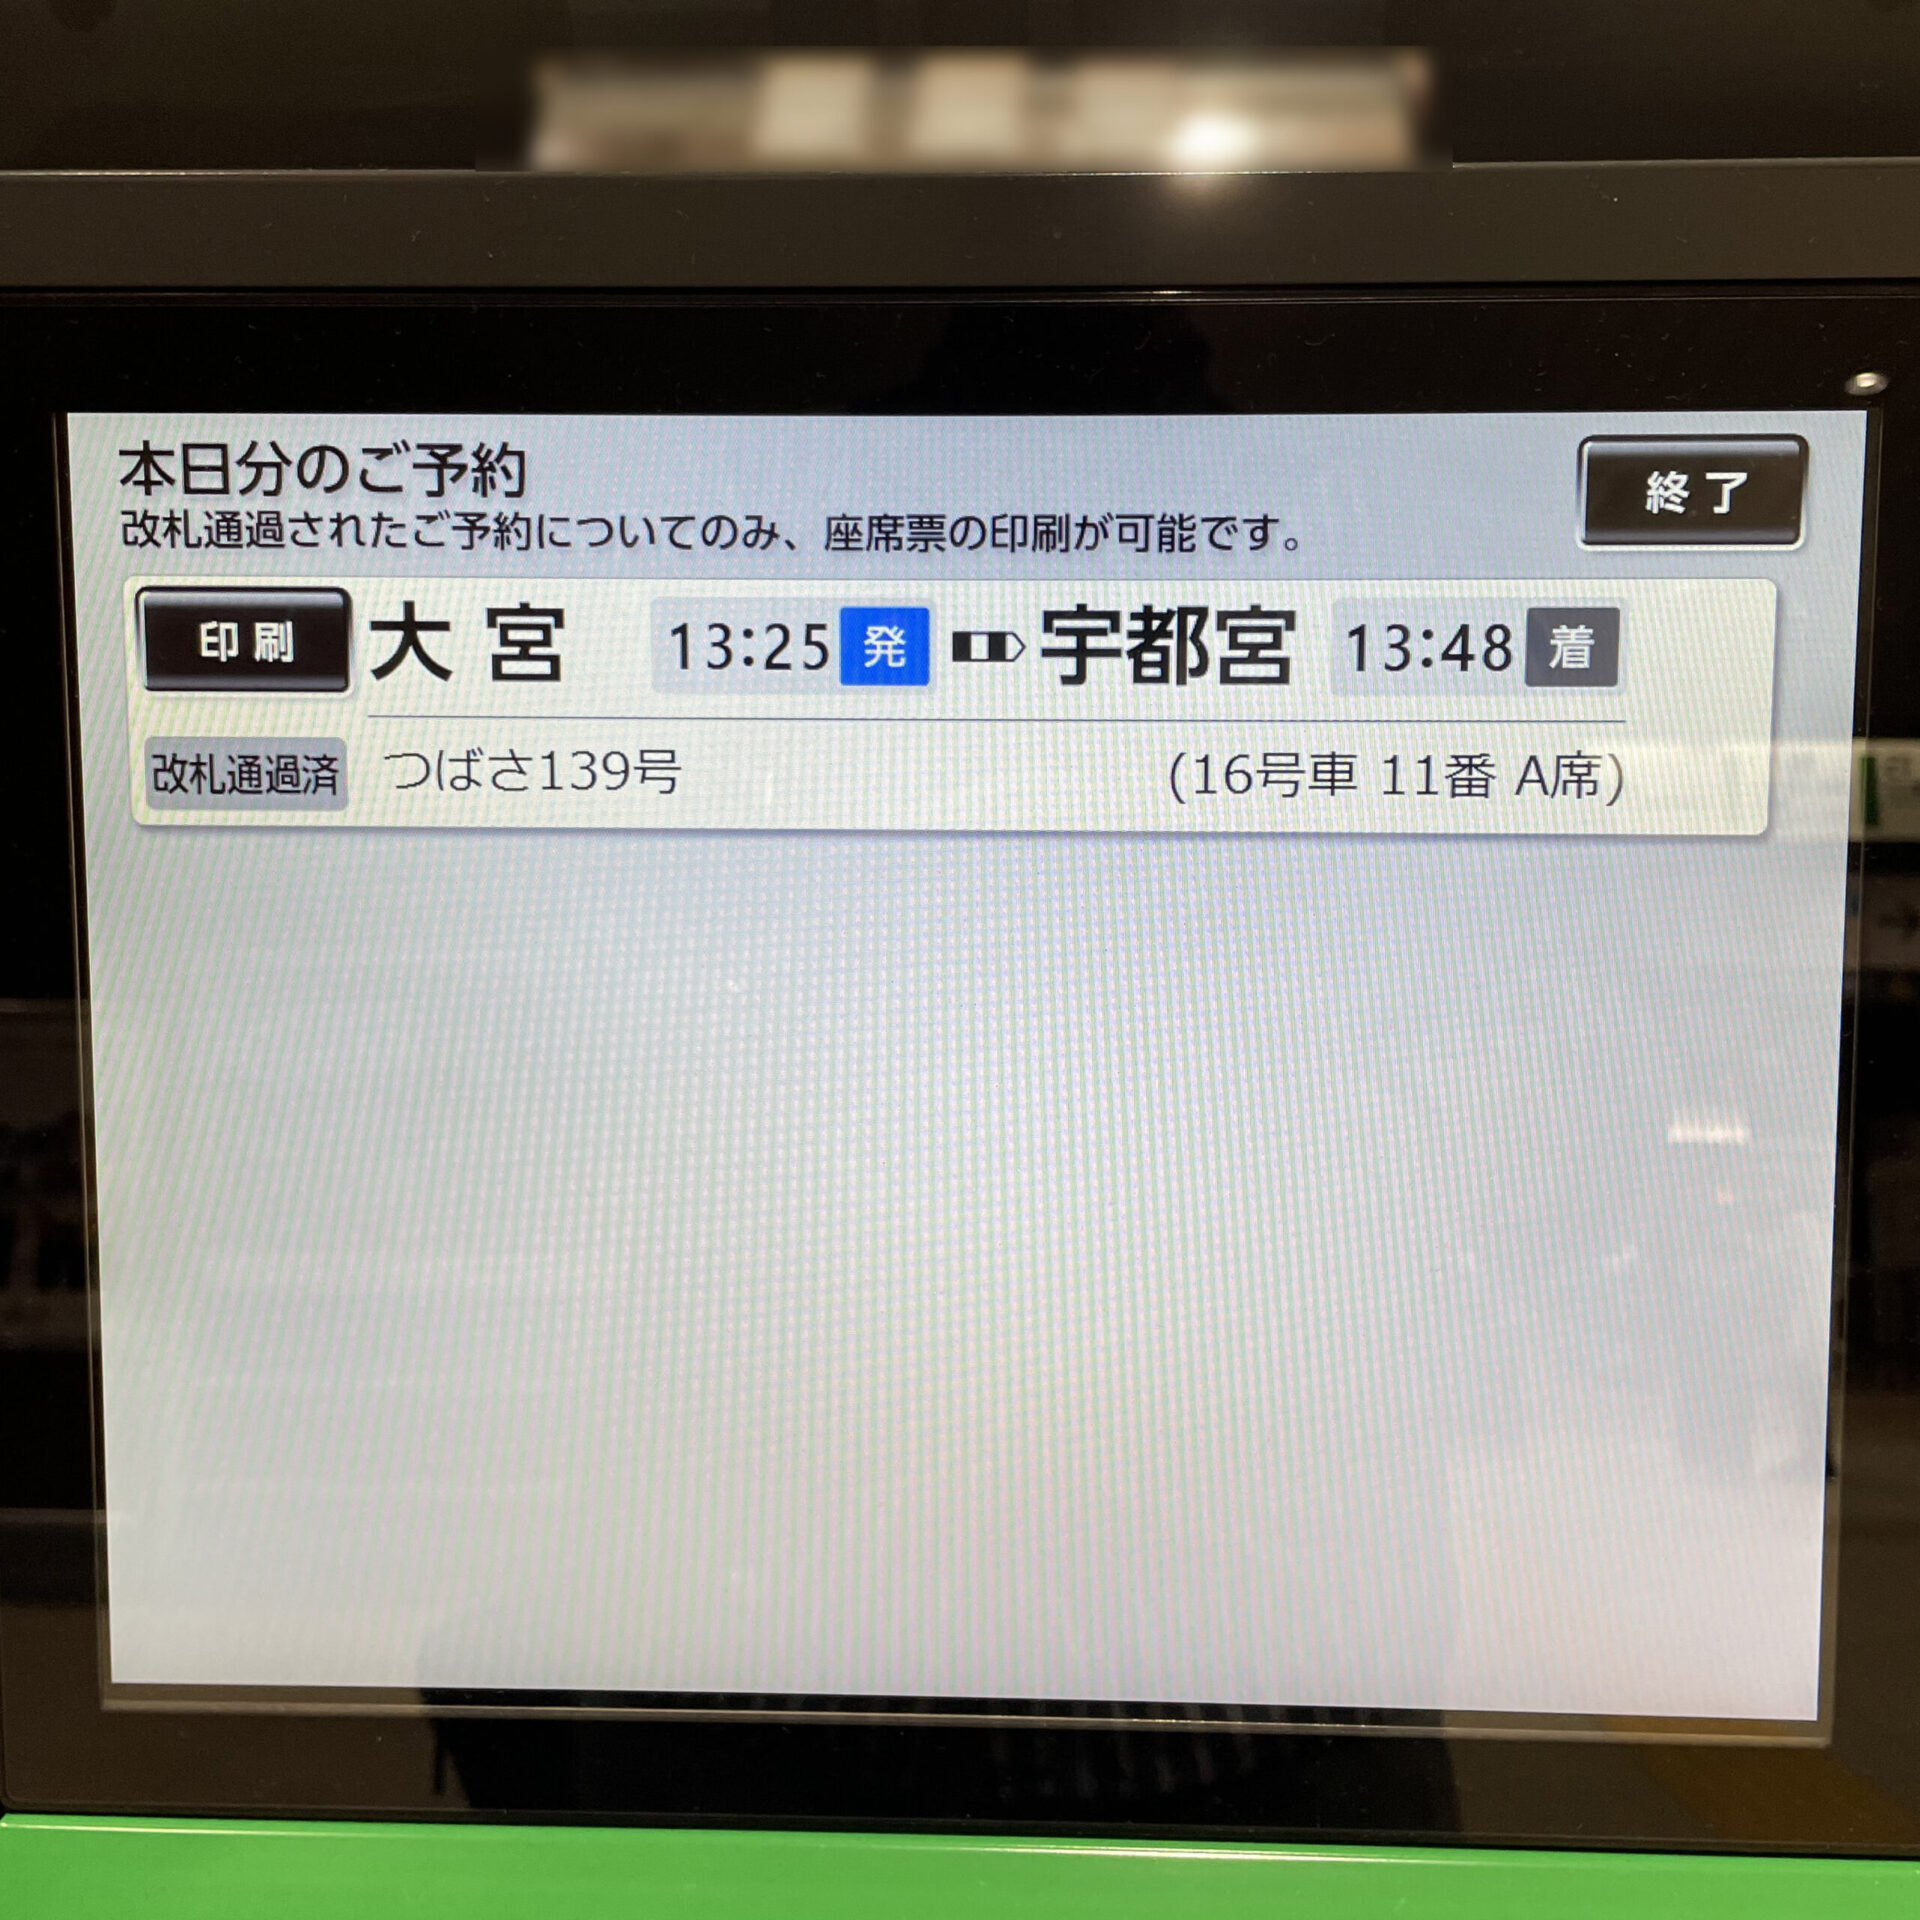 新幹線イーチケット座席票発行機の画面